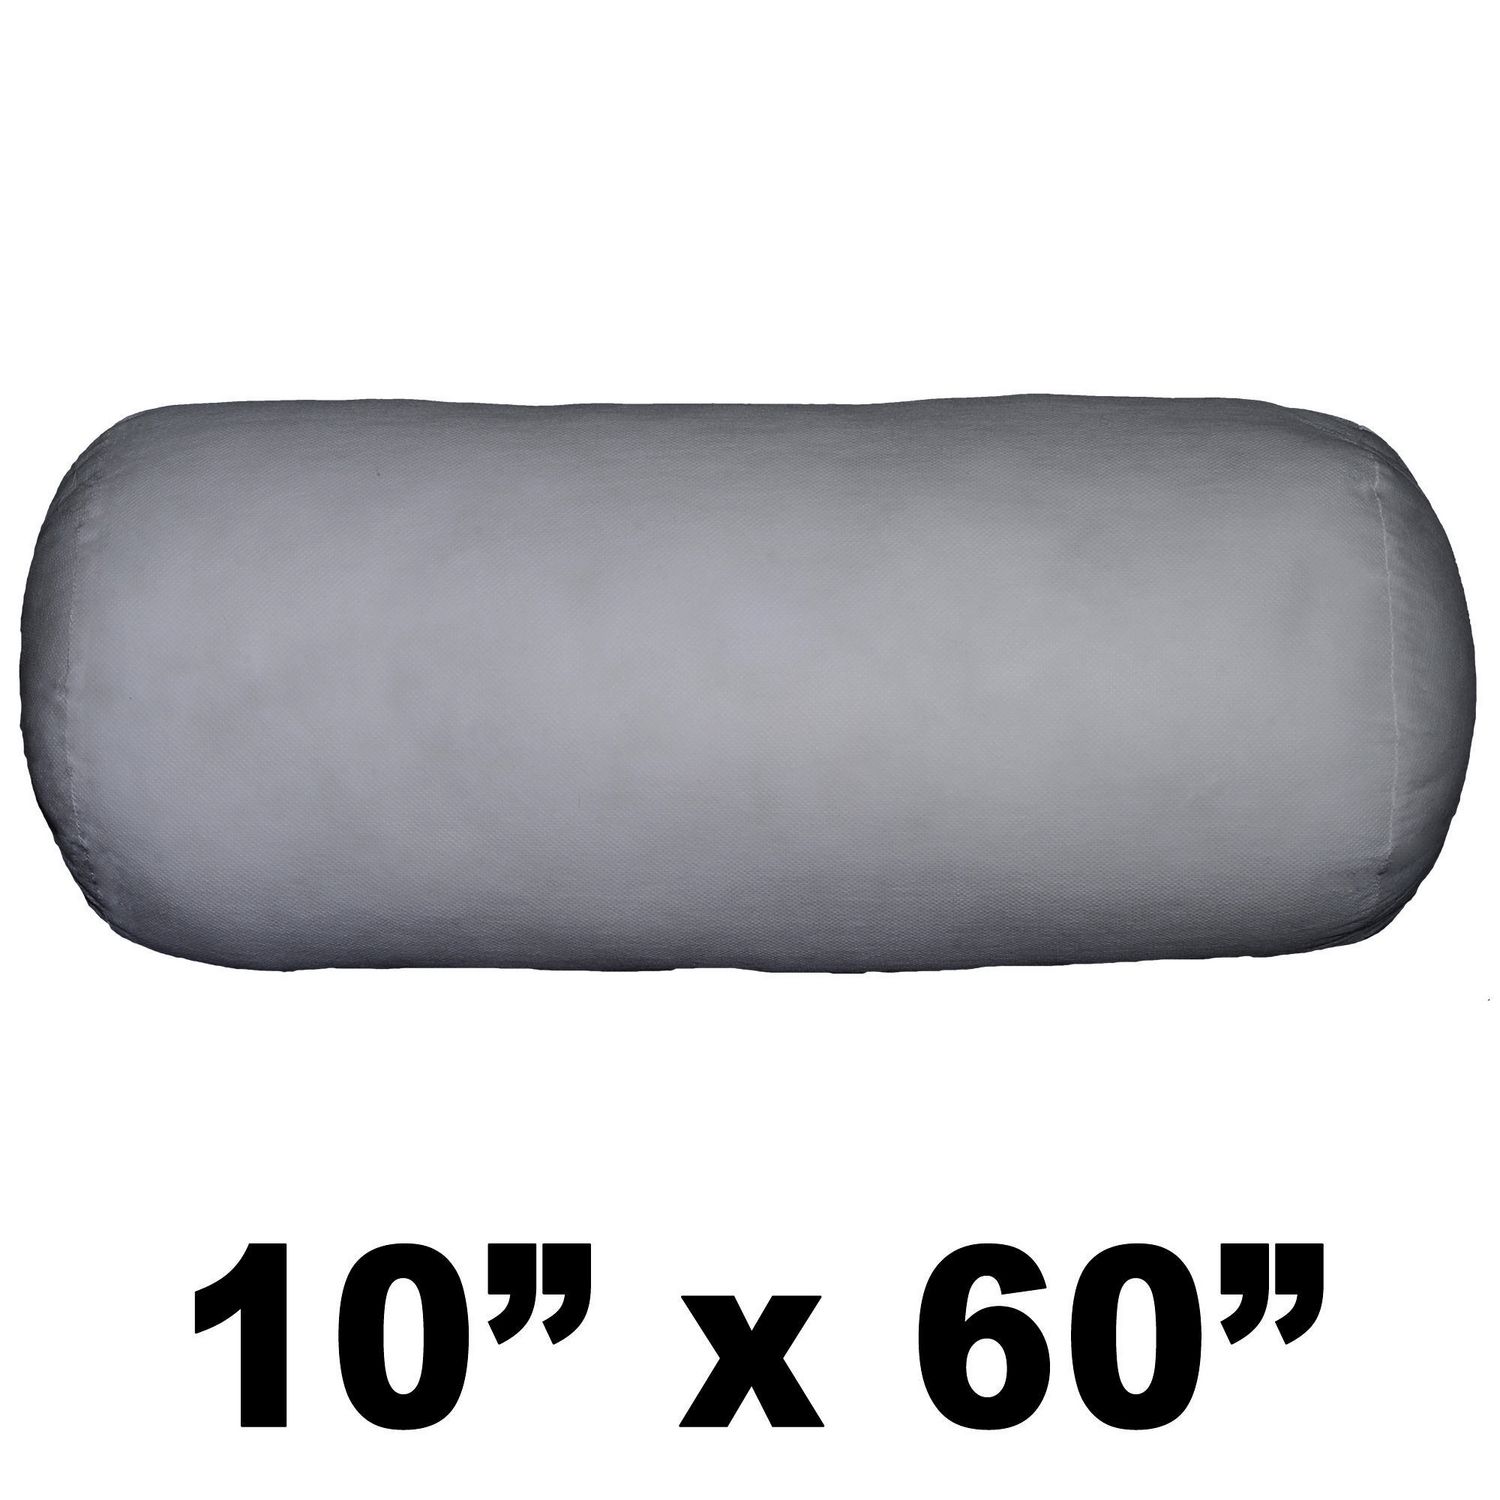 60 bolster pillow